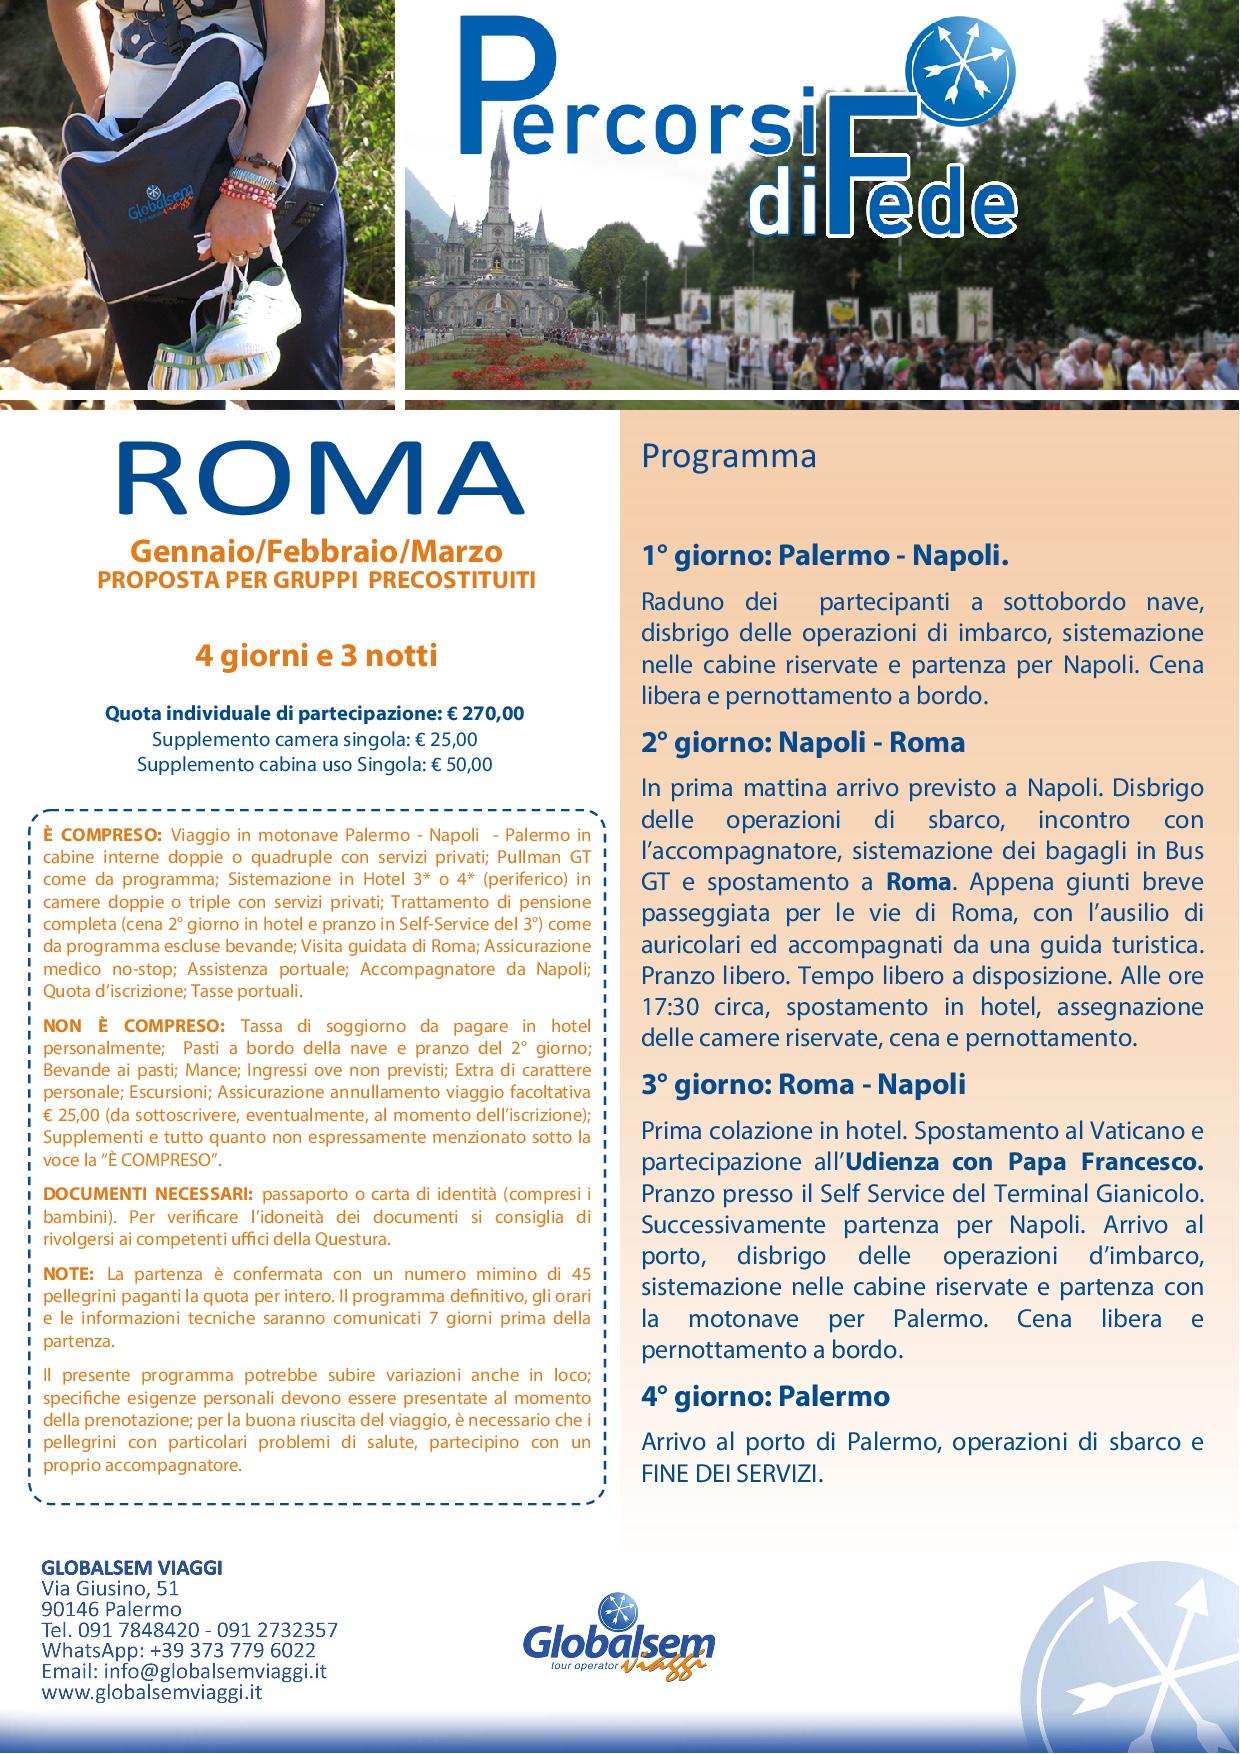 Roma Pellegrinaggio da 4 giorni da Palermo ad € 270